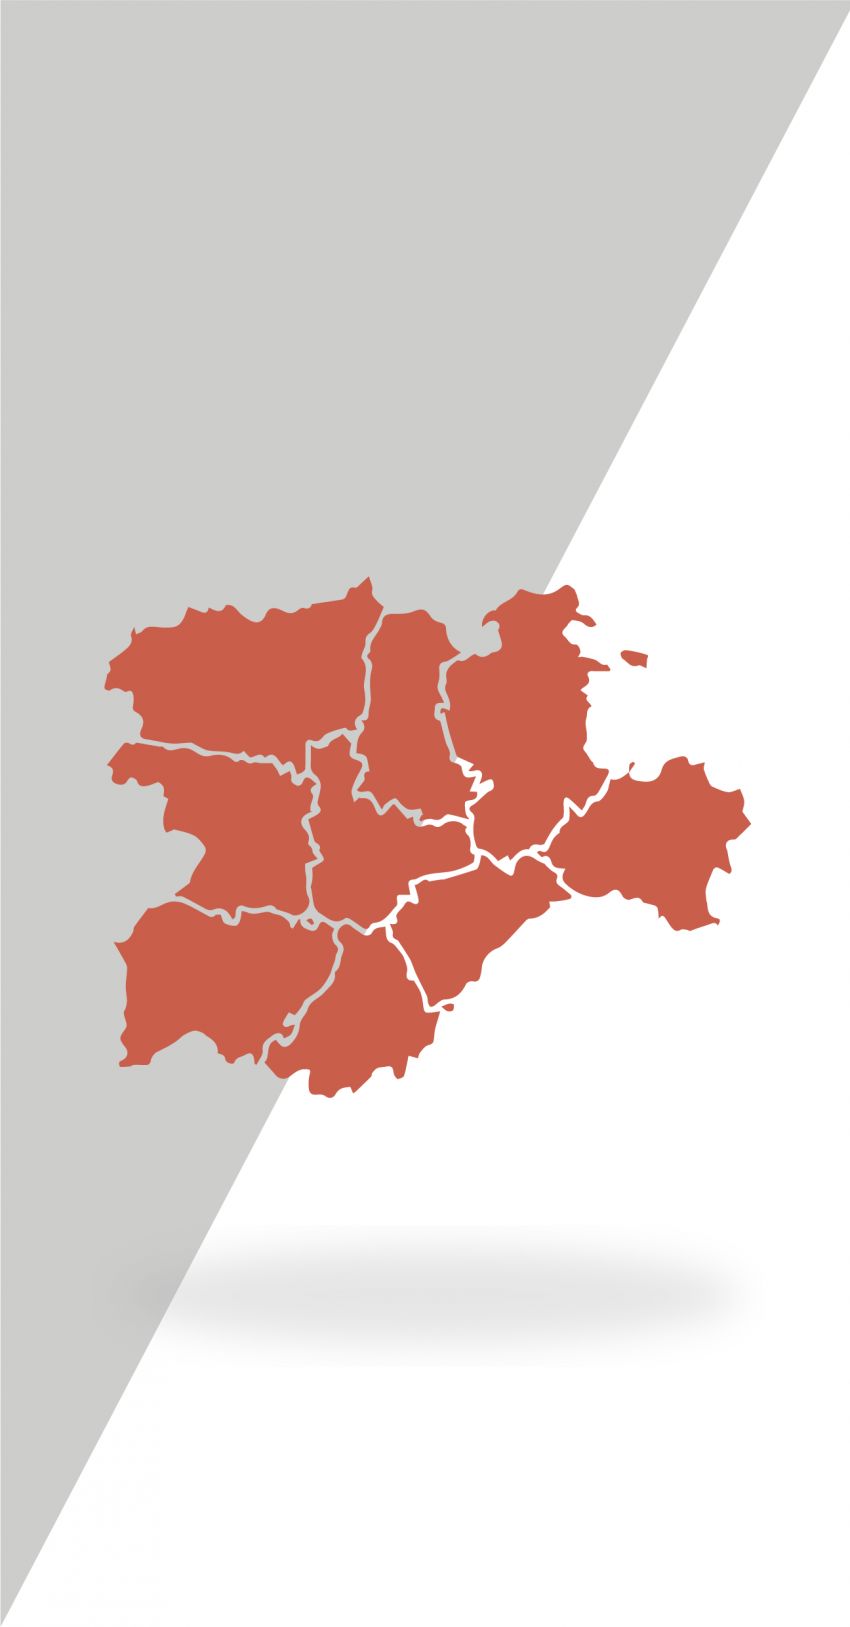 La economía en Castilla y León: algunas “pinceladas”